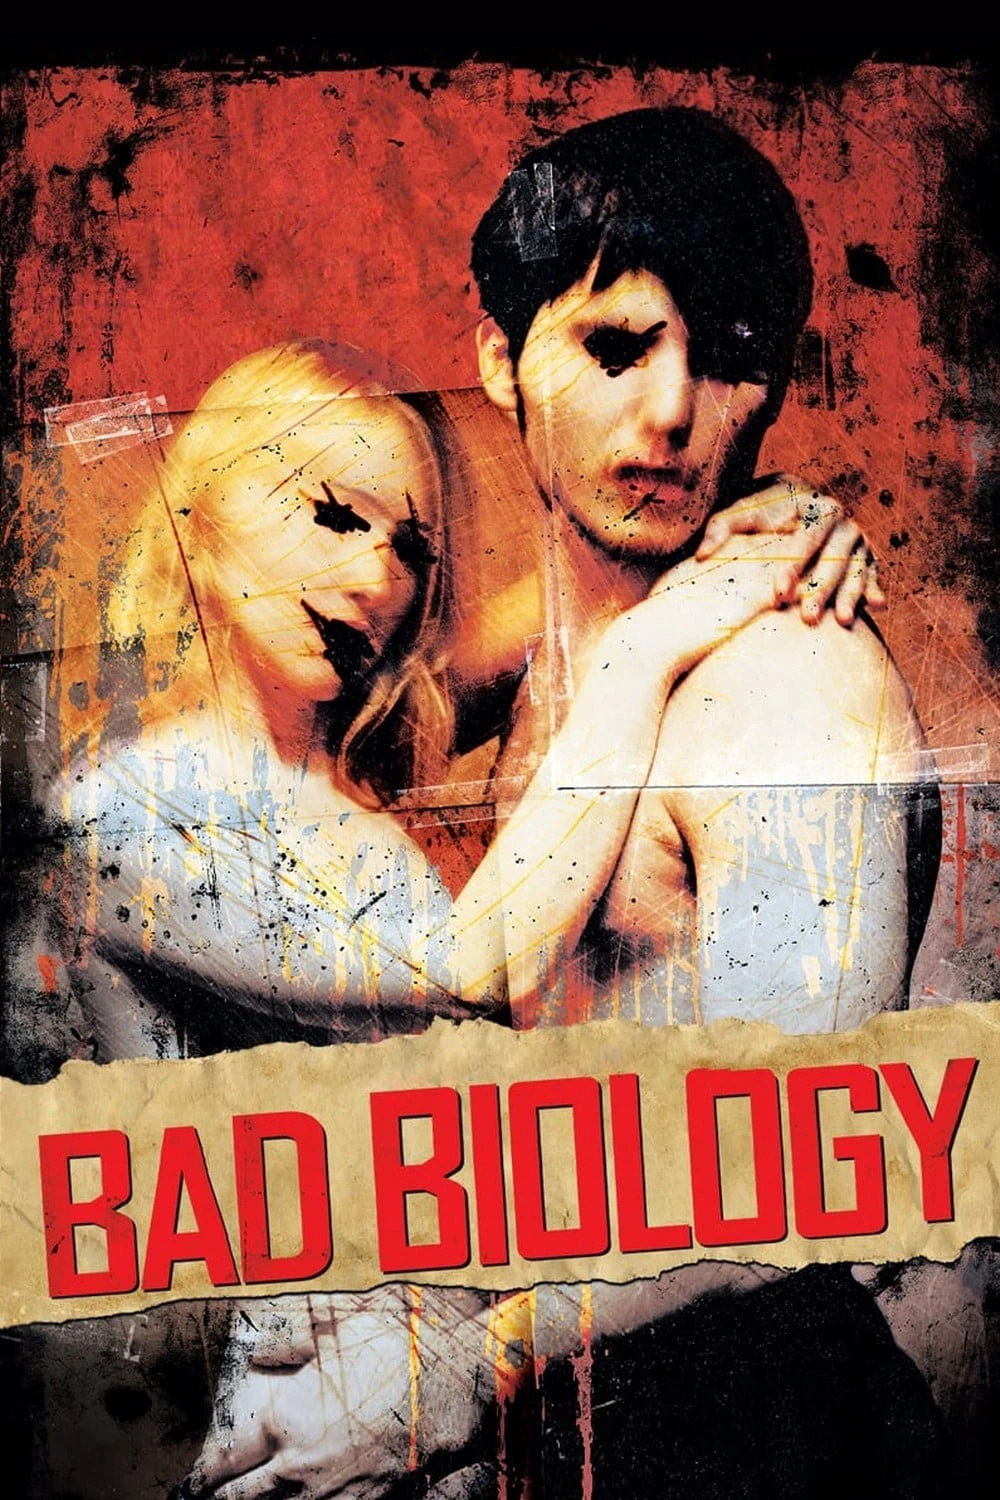 Bad Biology | Bad Biology (2008)